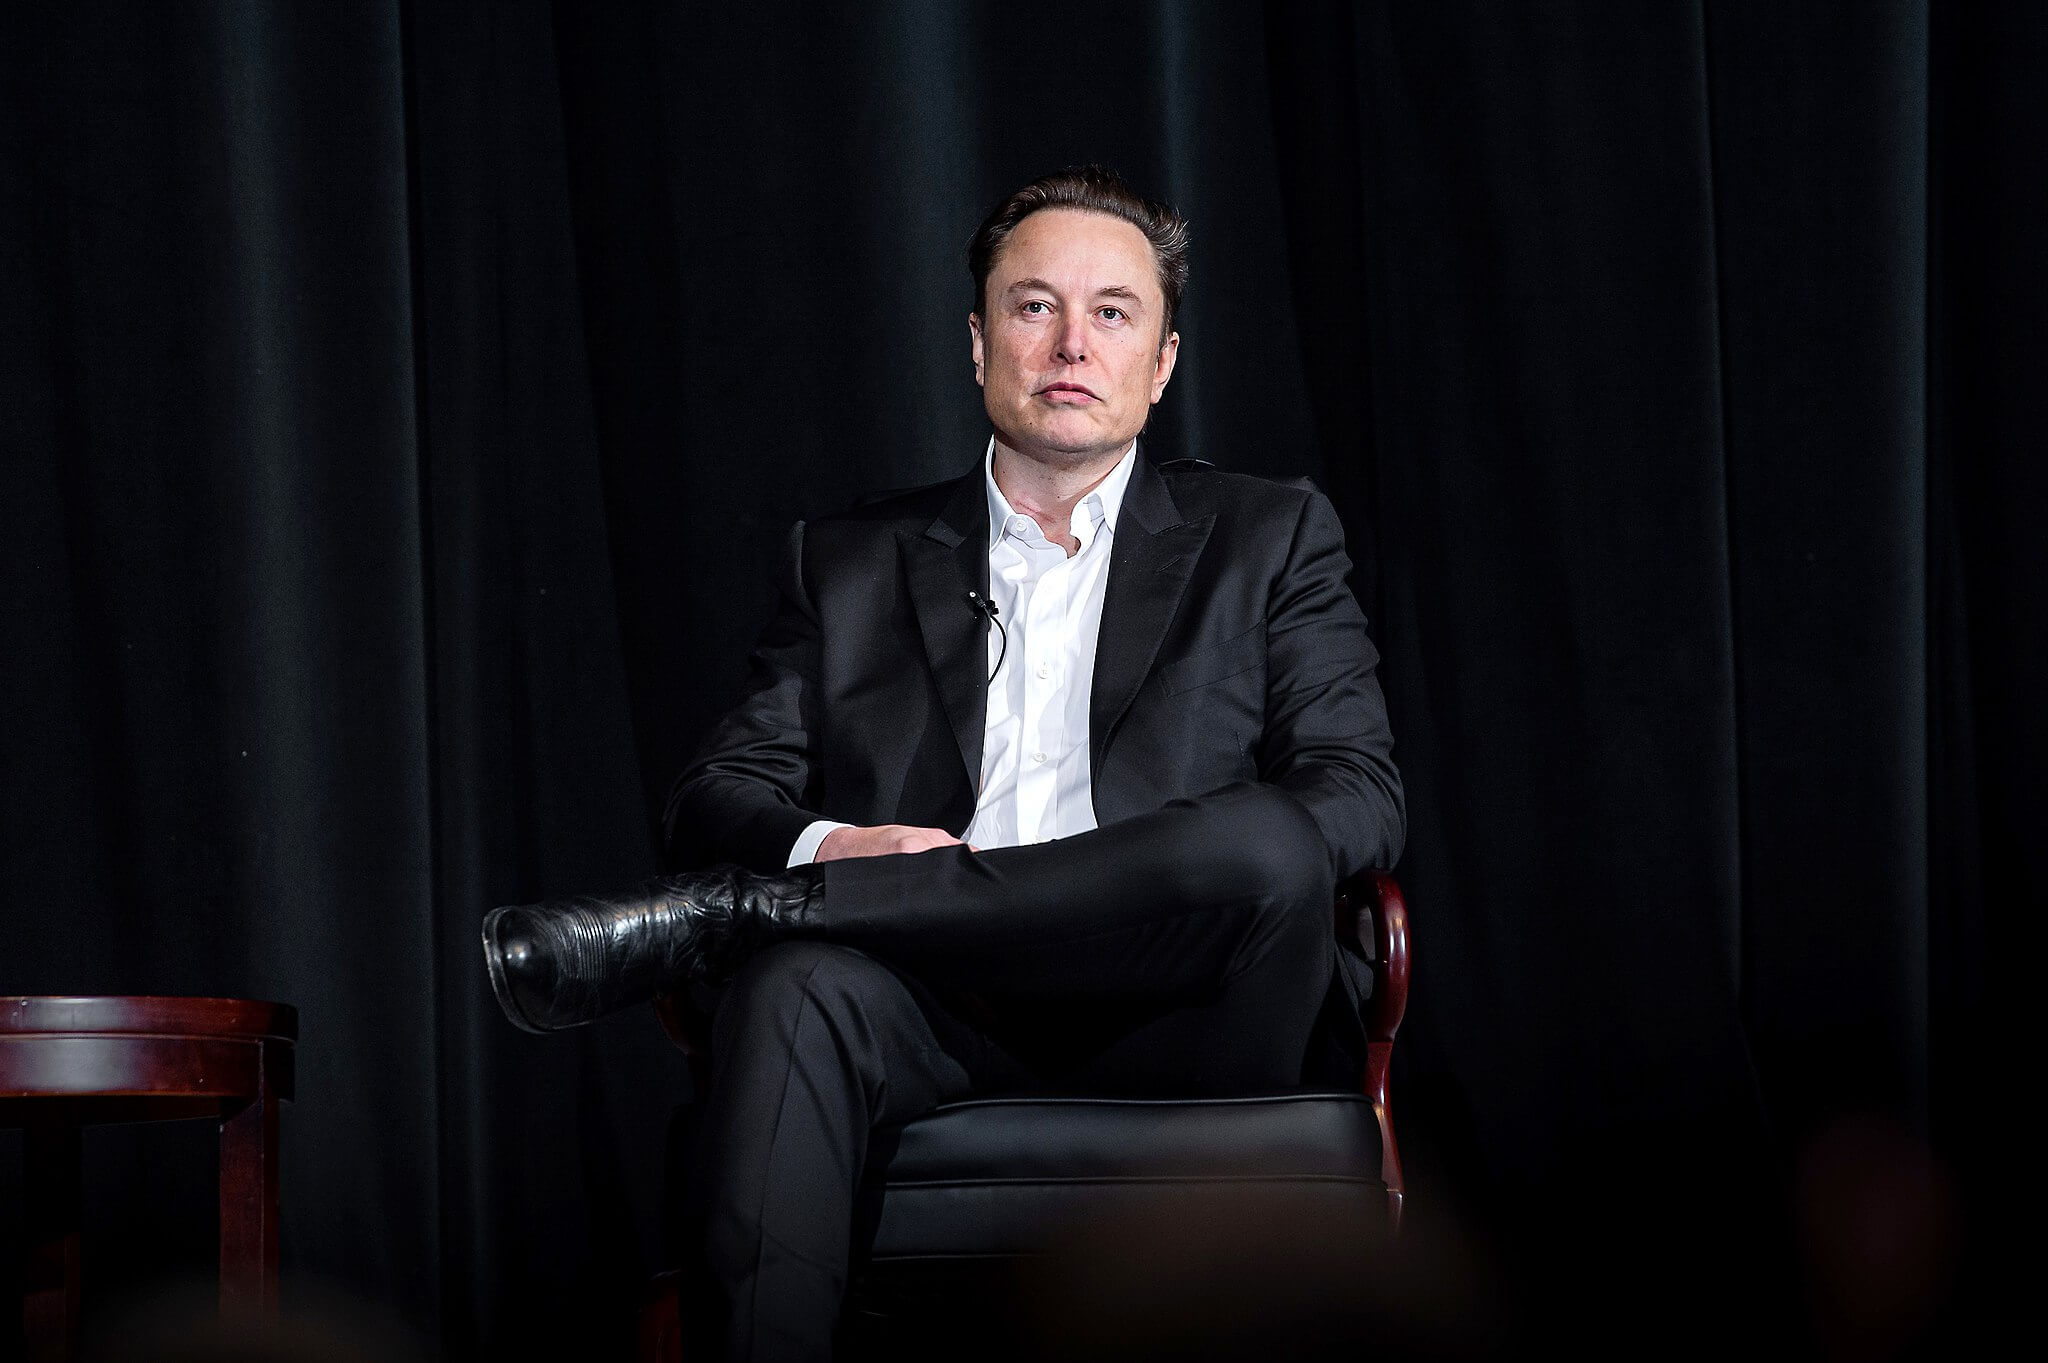 “Disposición de Elon Musk:” CA considera el impuesto a la riqueza, incluso para aquellos que se mudaron fuera del estado